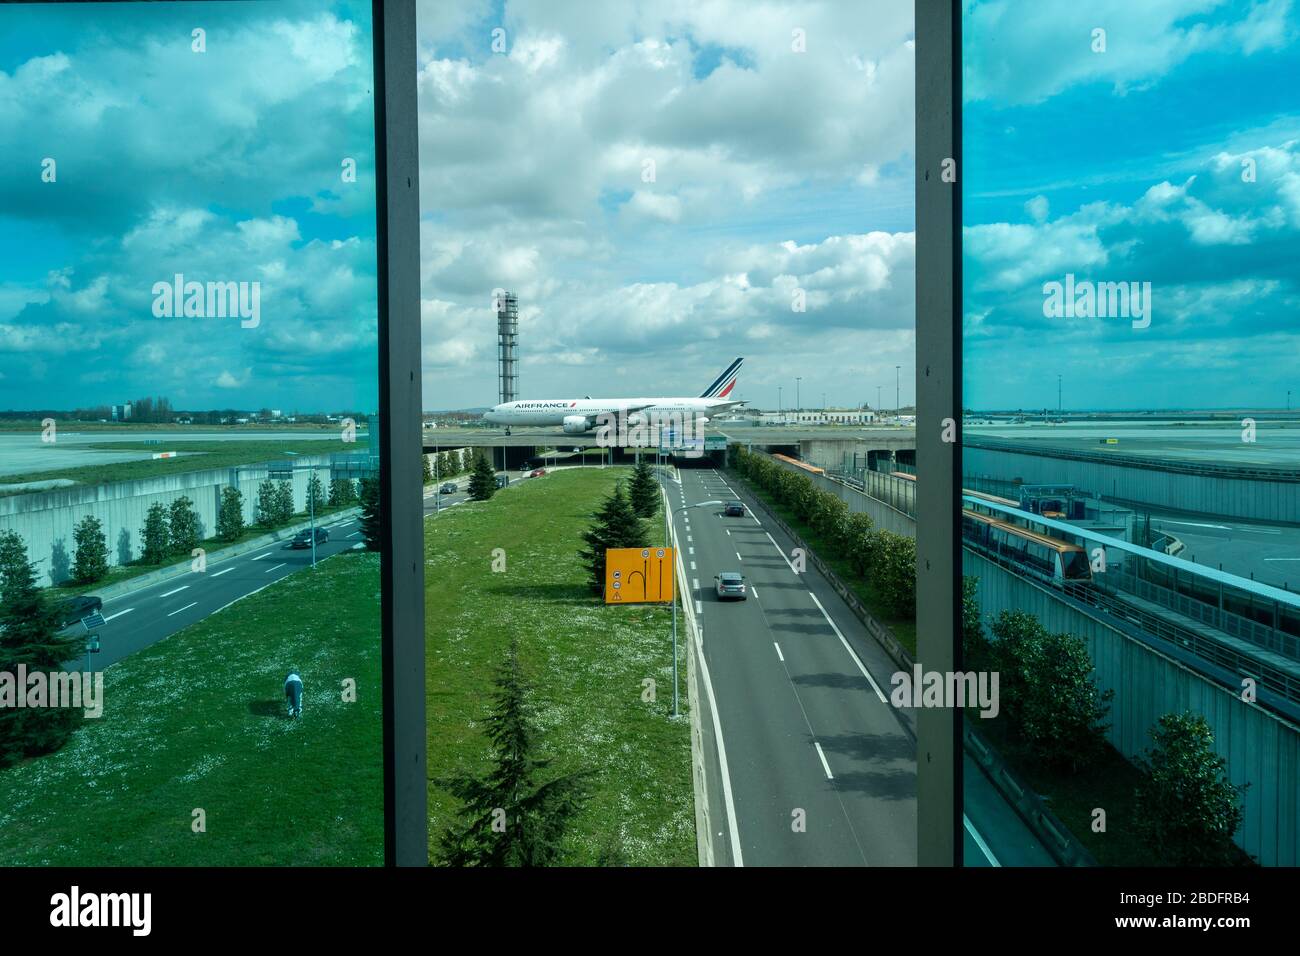 Les taxis aériens Air France à l'aéroport Paris Charles de Gaulle - vue depuis la fenêtre du salon d'affaires Air France donnant sur la France Banque D'Images